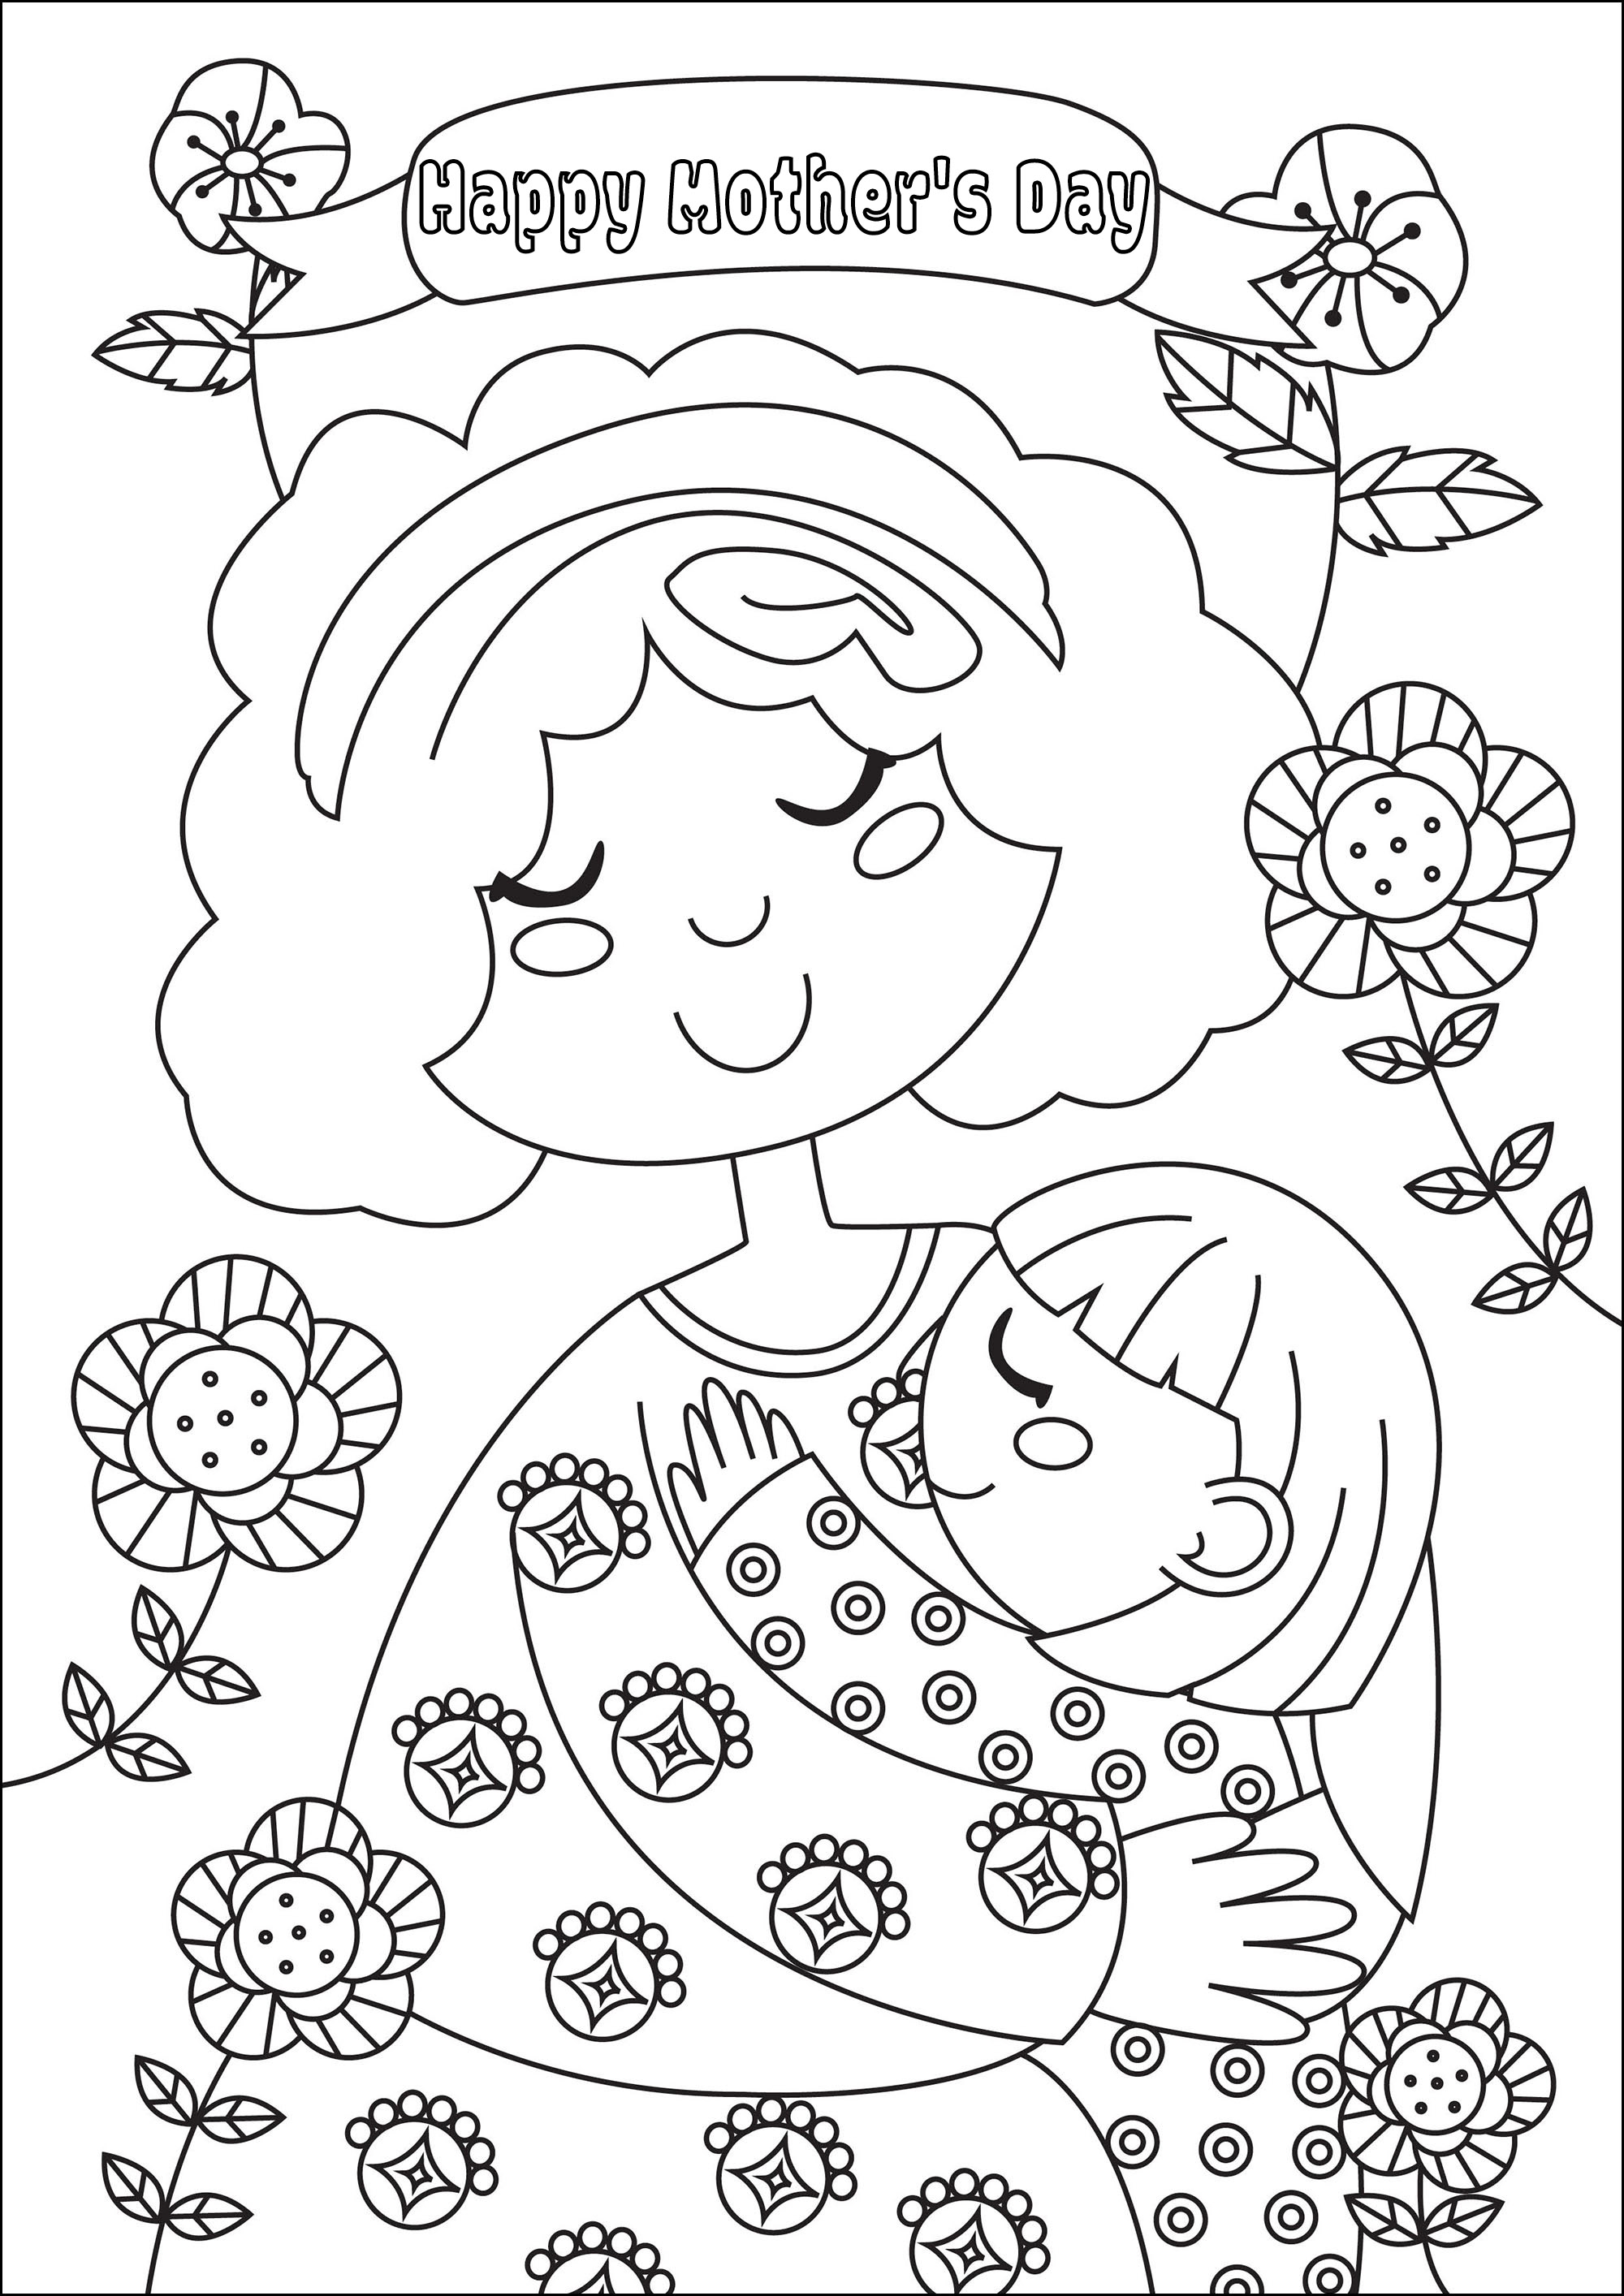 Colorear para el Día de la Madre. Una preciosa página para colorear con una niña besando a su querida madre, Artista : Gaelle Picard